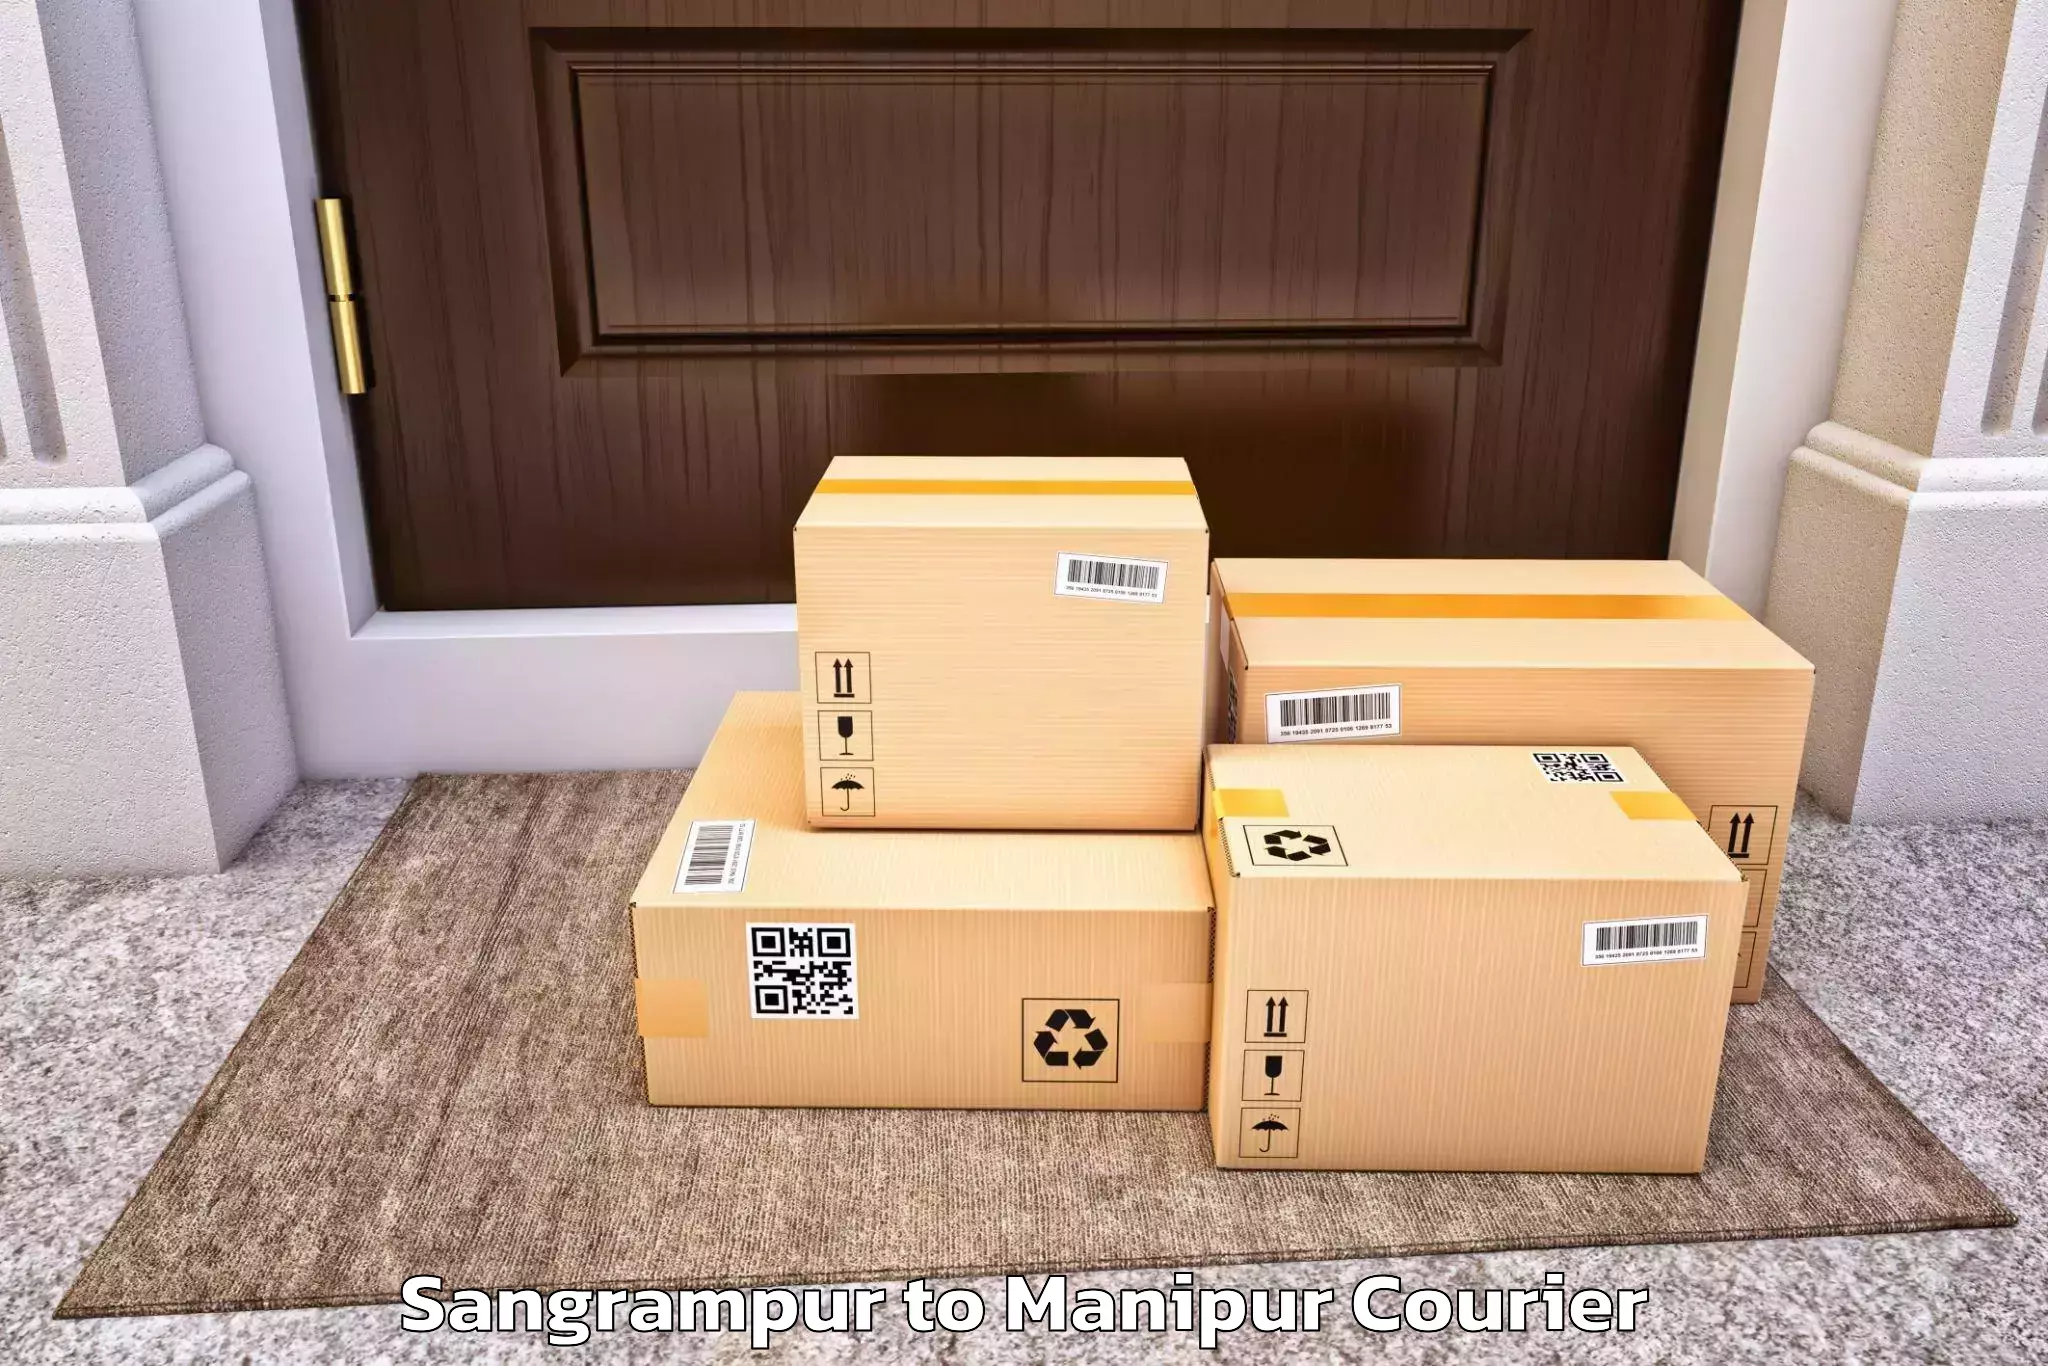 Dependable furniture transport Sangrampur to Tadubi